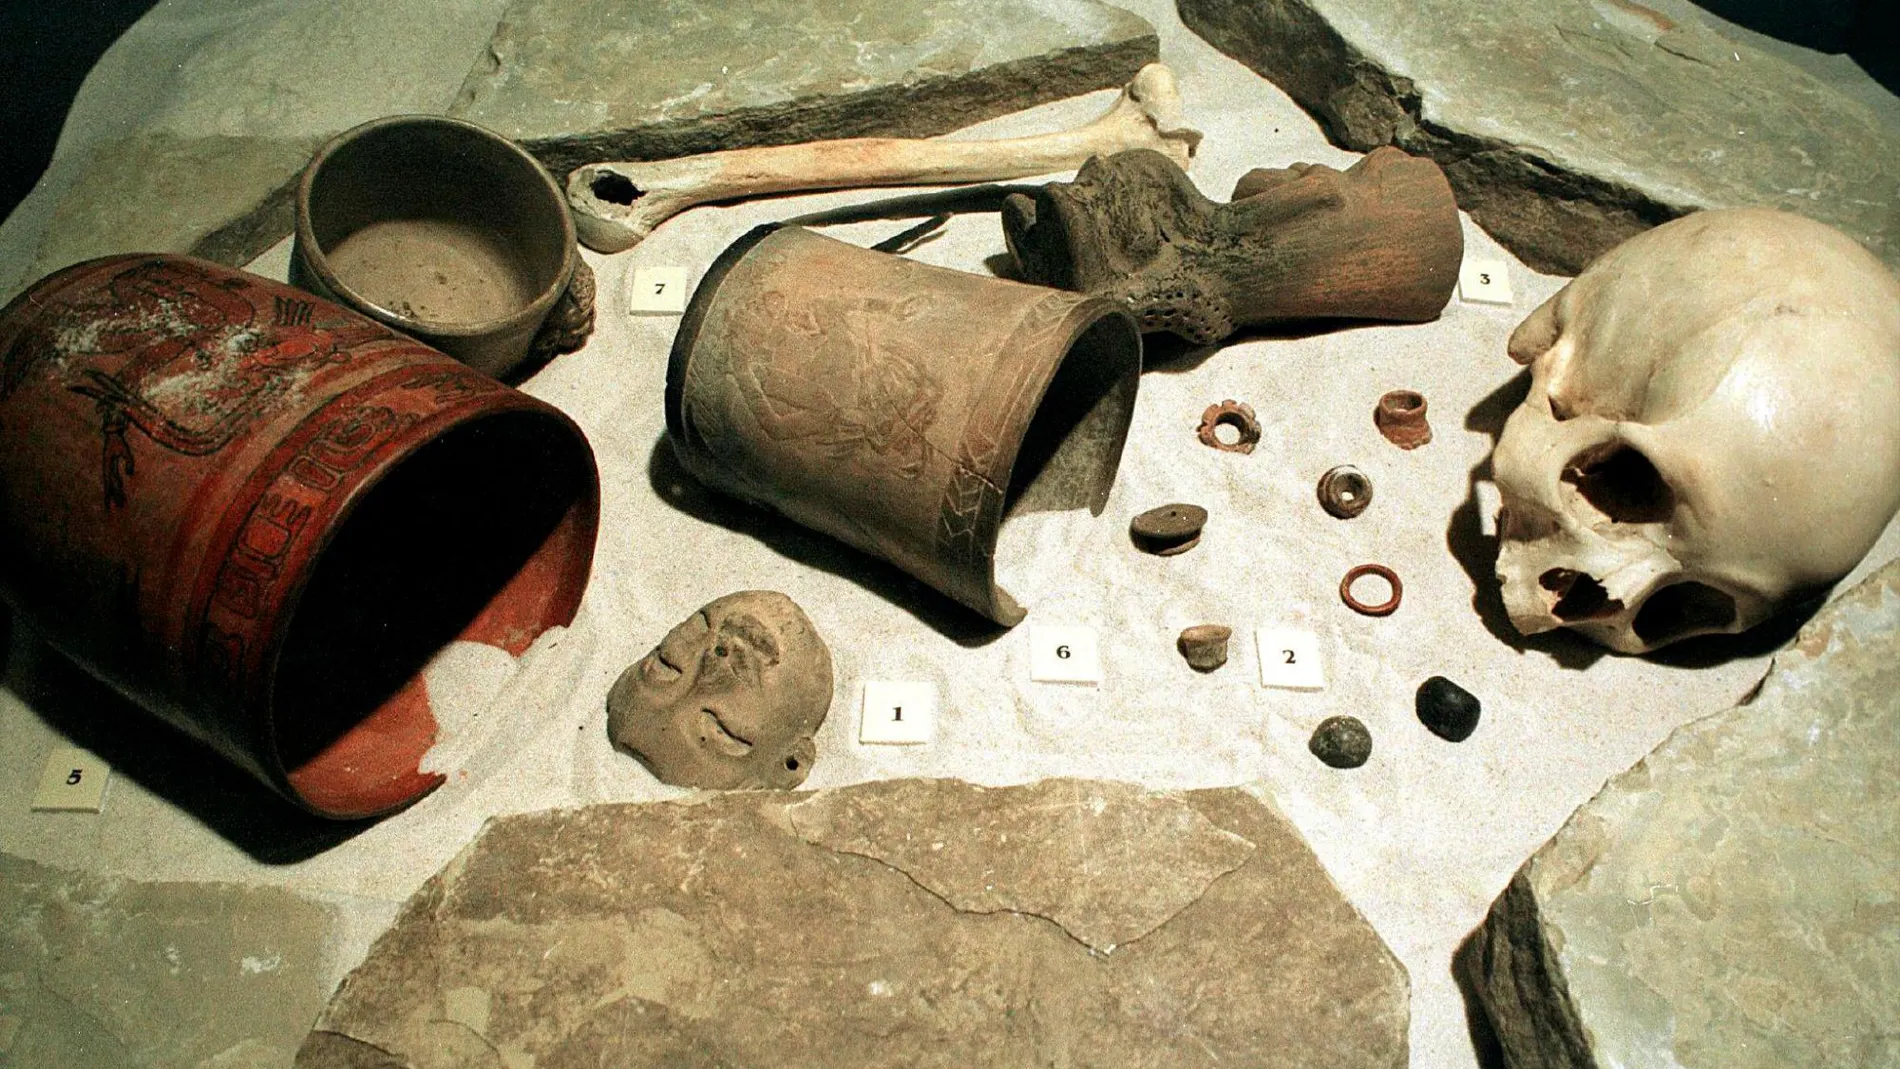 Esculturas, herramientas, adornos, prendas, cerámica y otros utensilios de la cultura maya